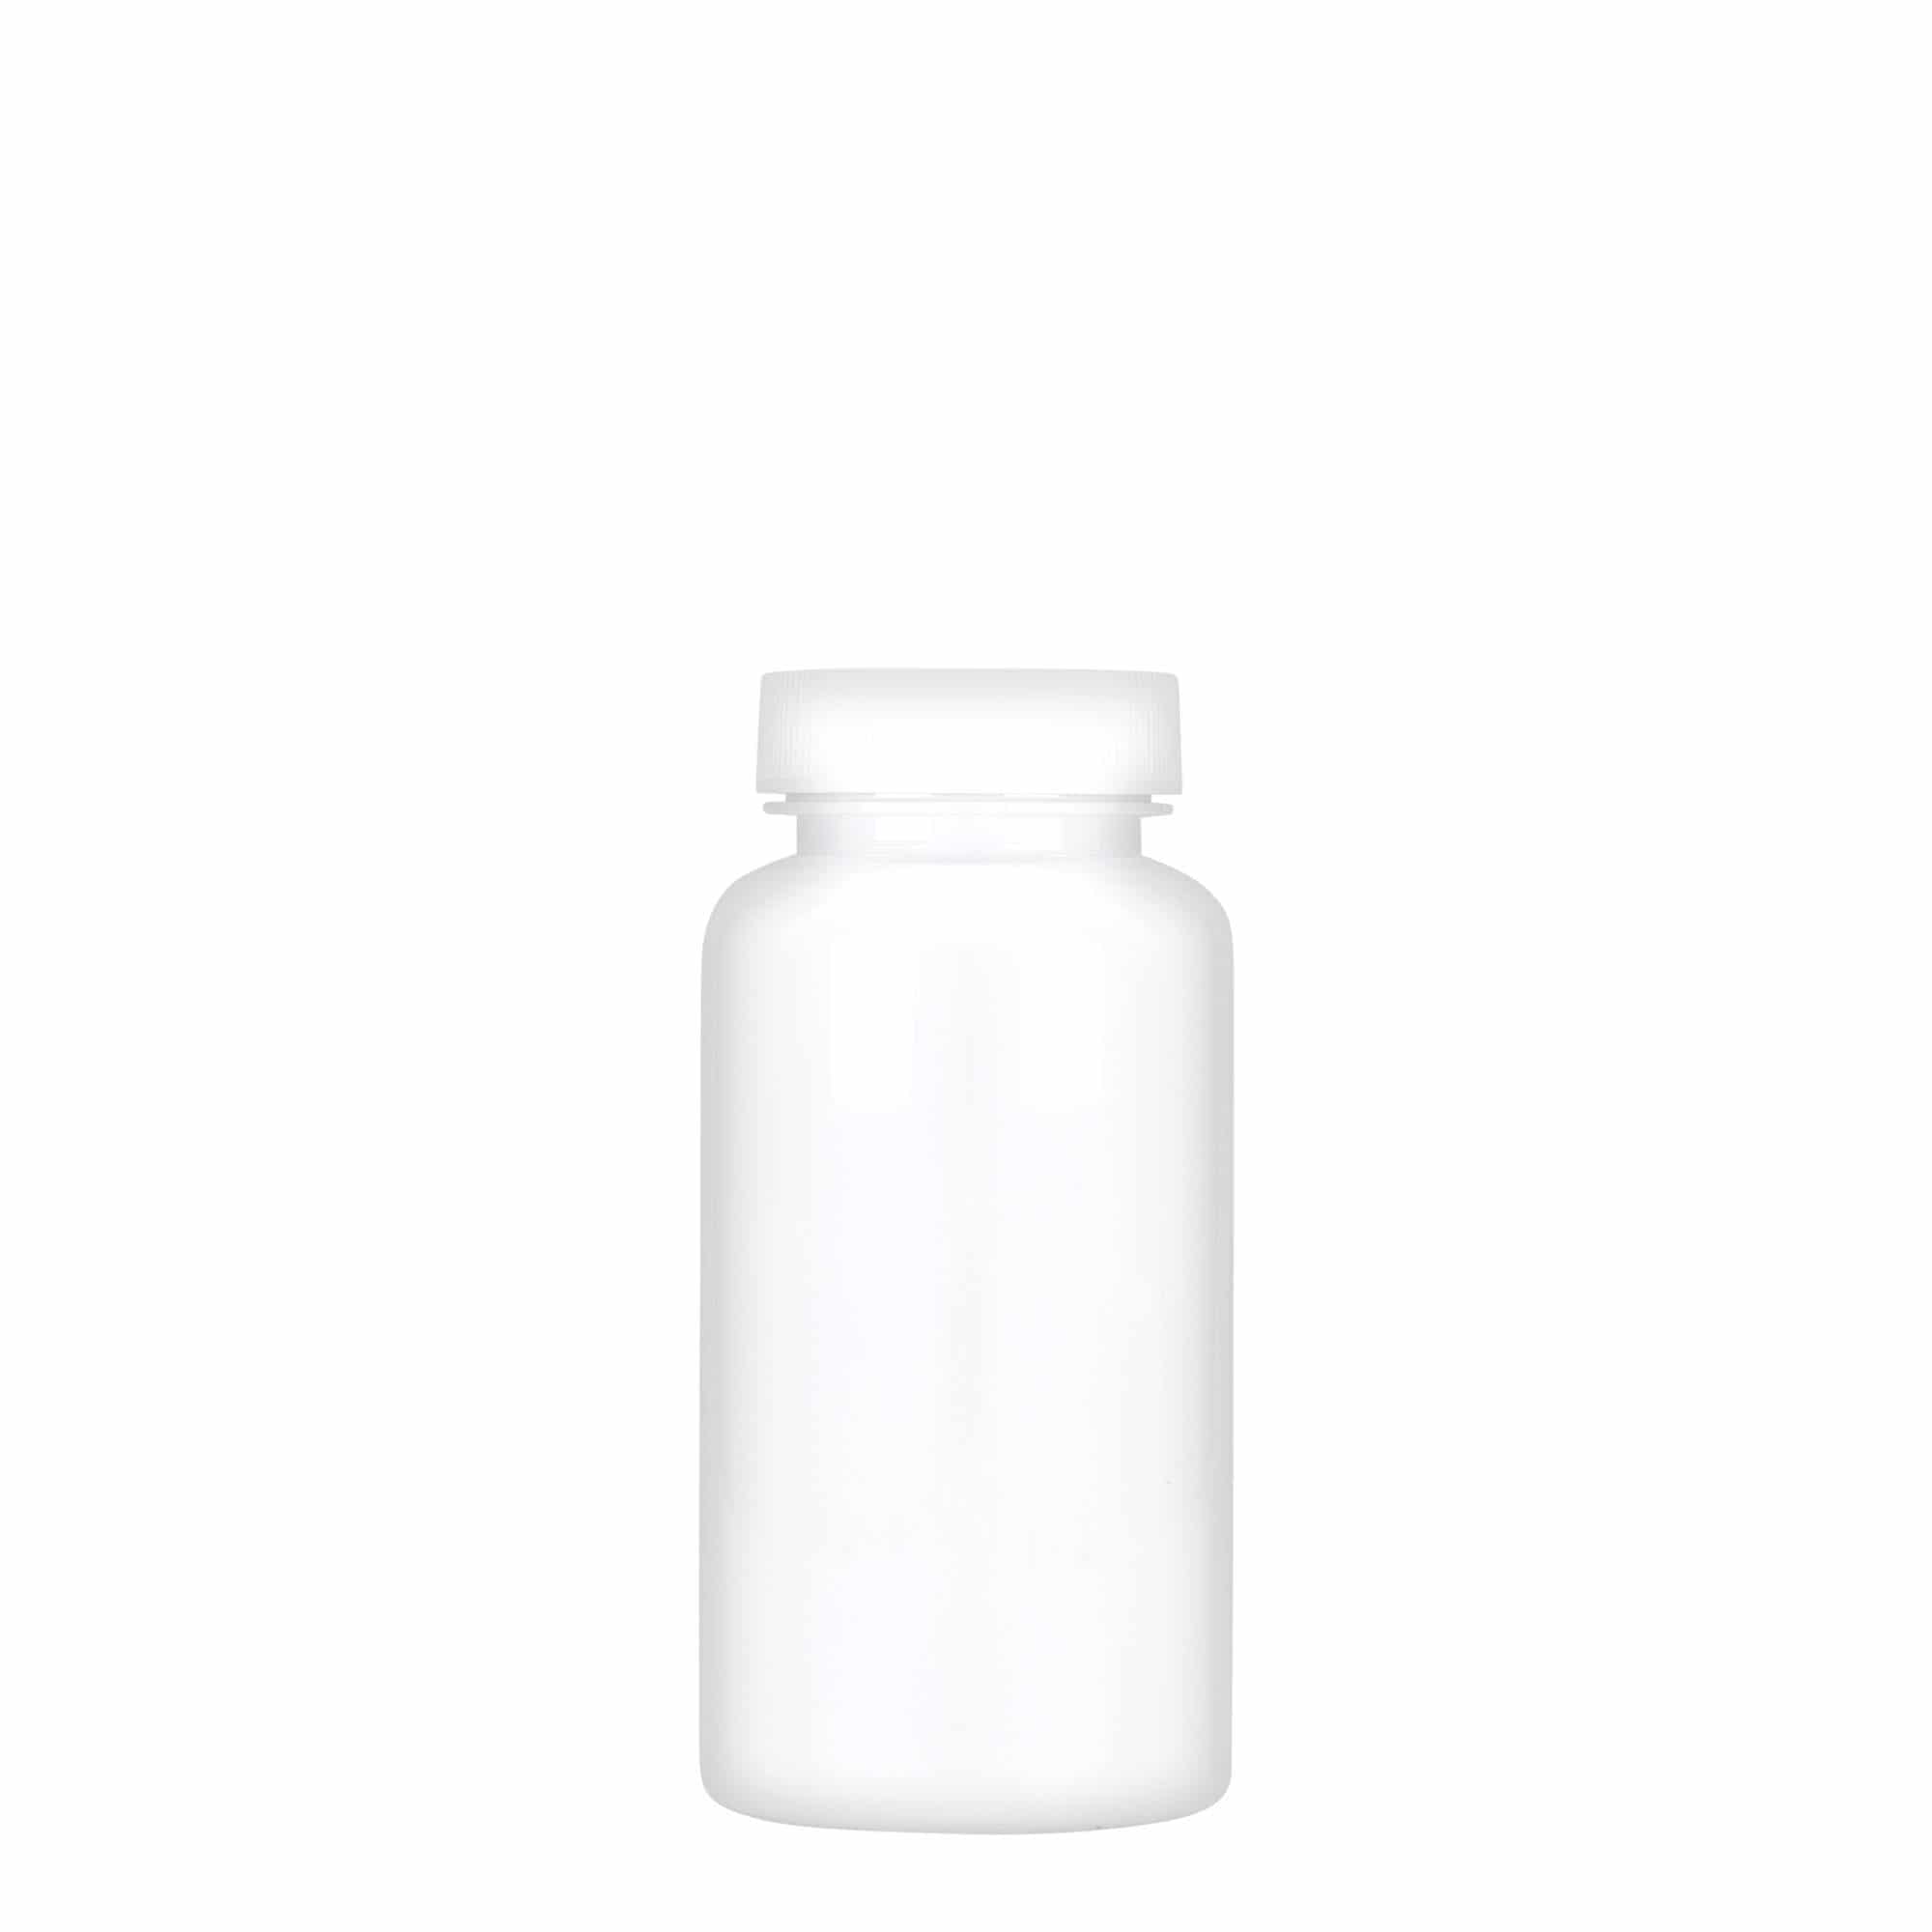 150 ml PET packer, plastic, white, closure: GPI 38/400